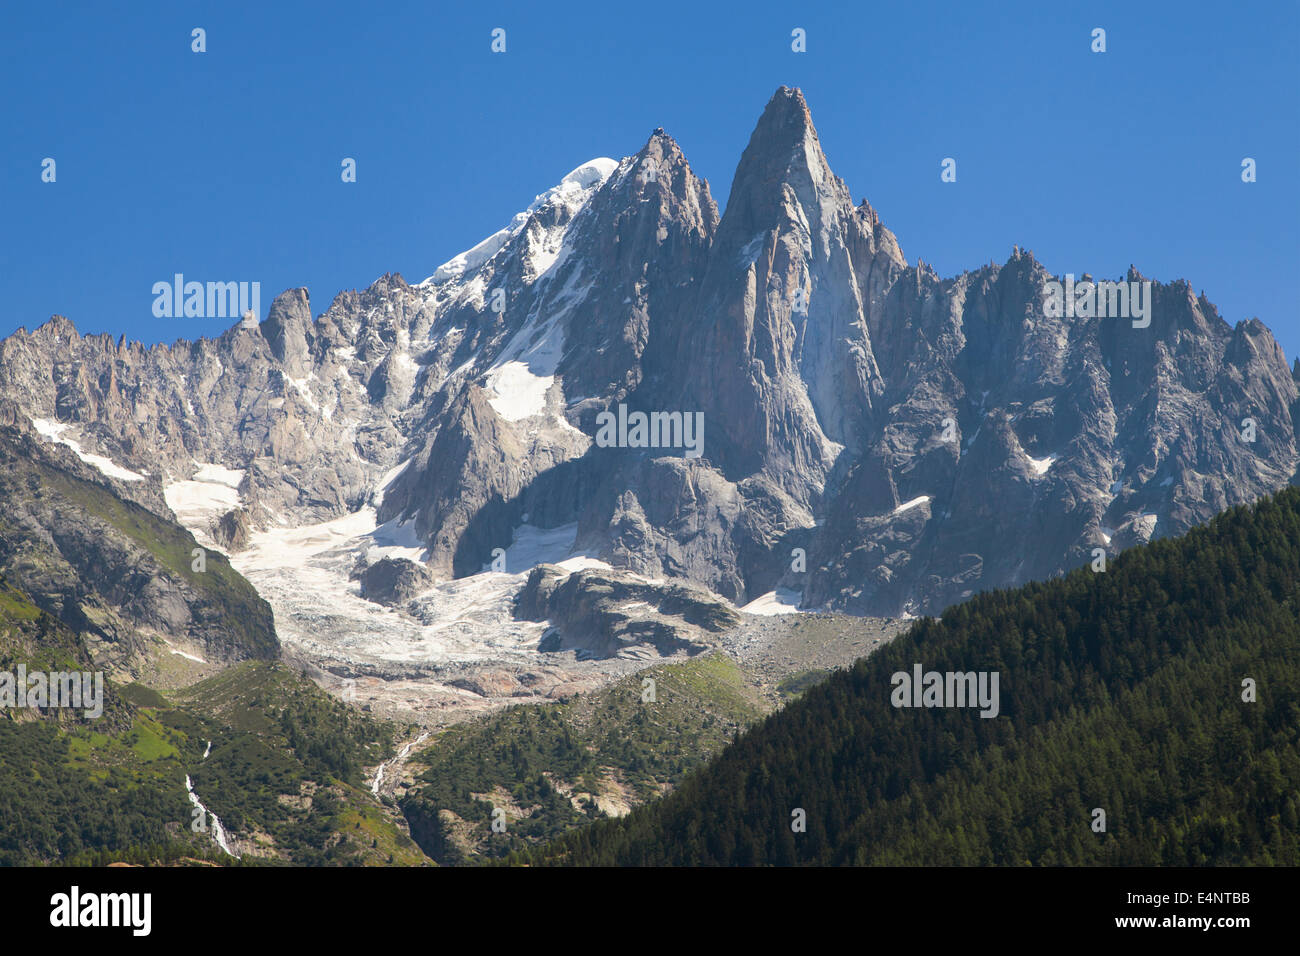 Aiguille Verte et Les Drus dans le massif du Mont Blanc, Haute-Savoie, France. Banque D'Images